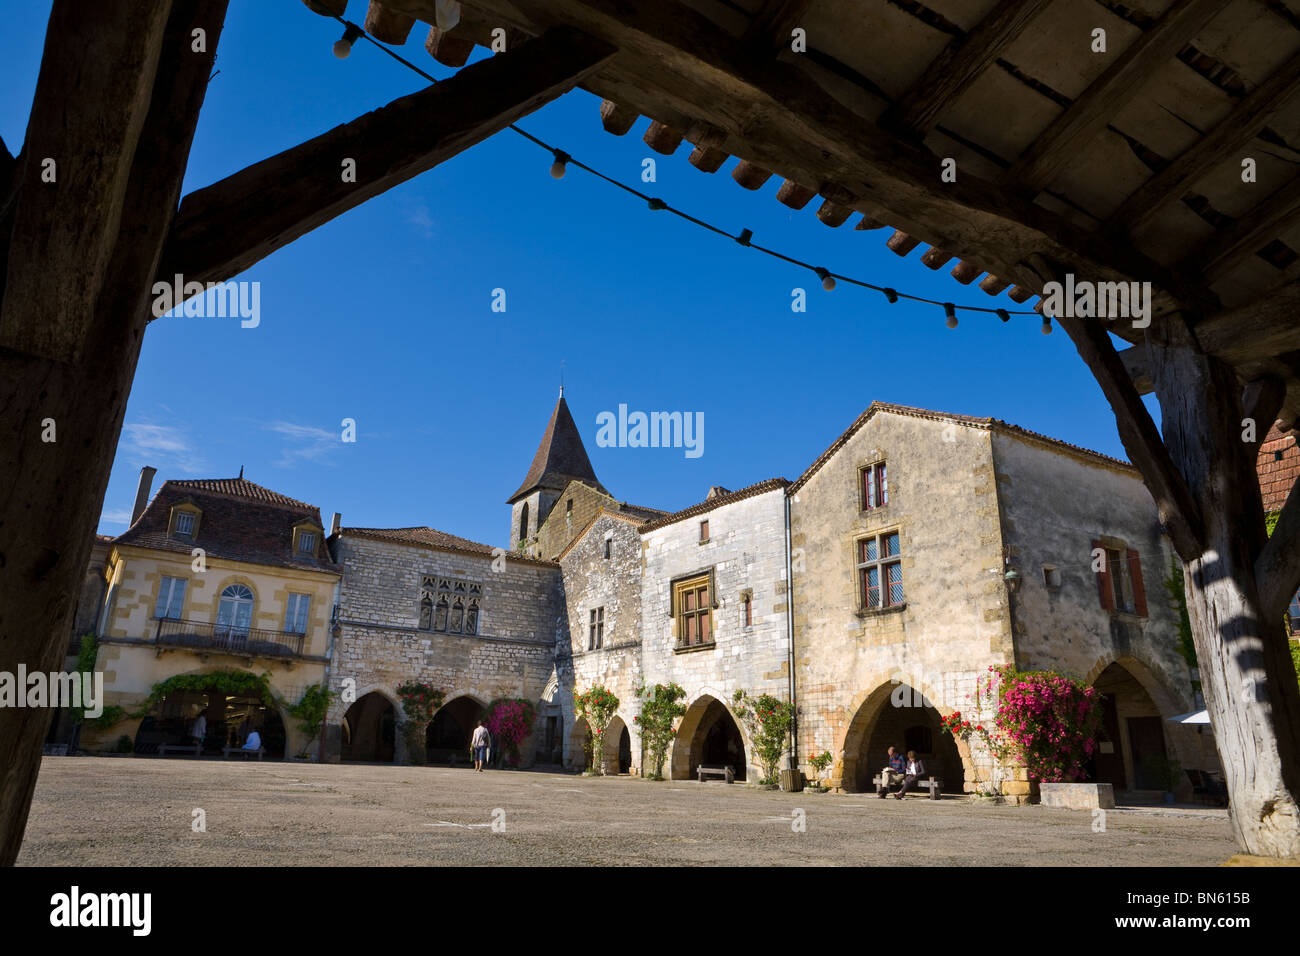 La piazza centrale, Monpazier, Dordogne, Francia Foto Stock